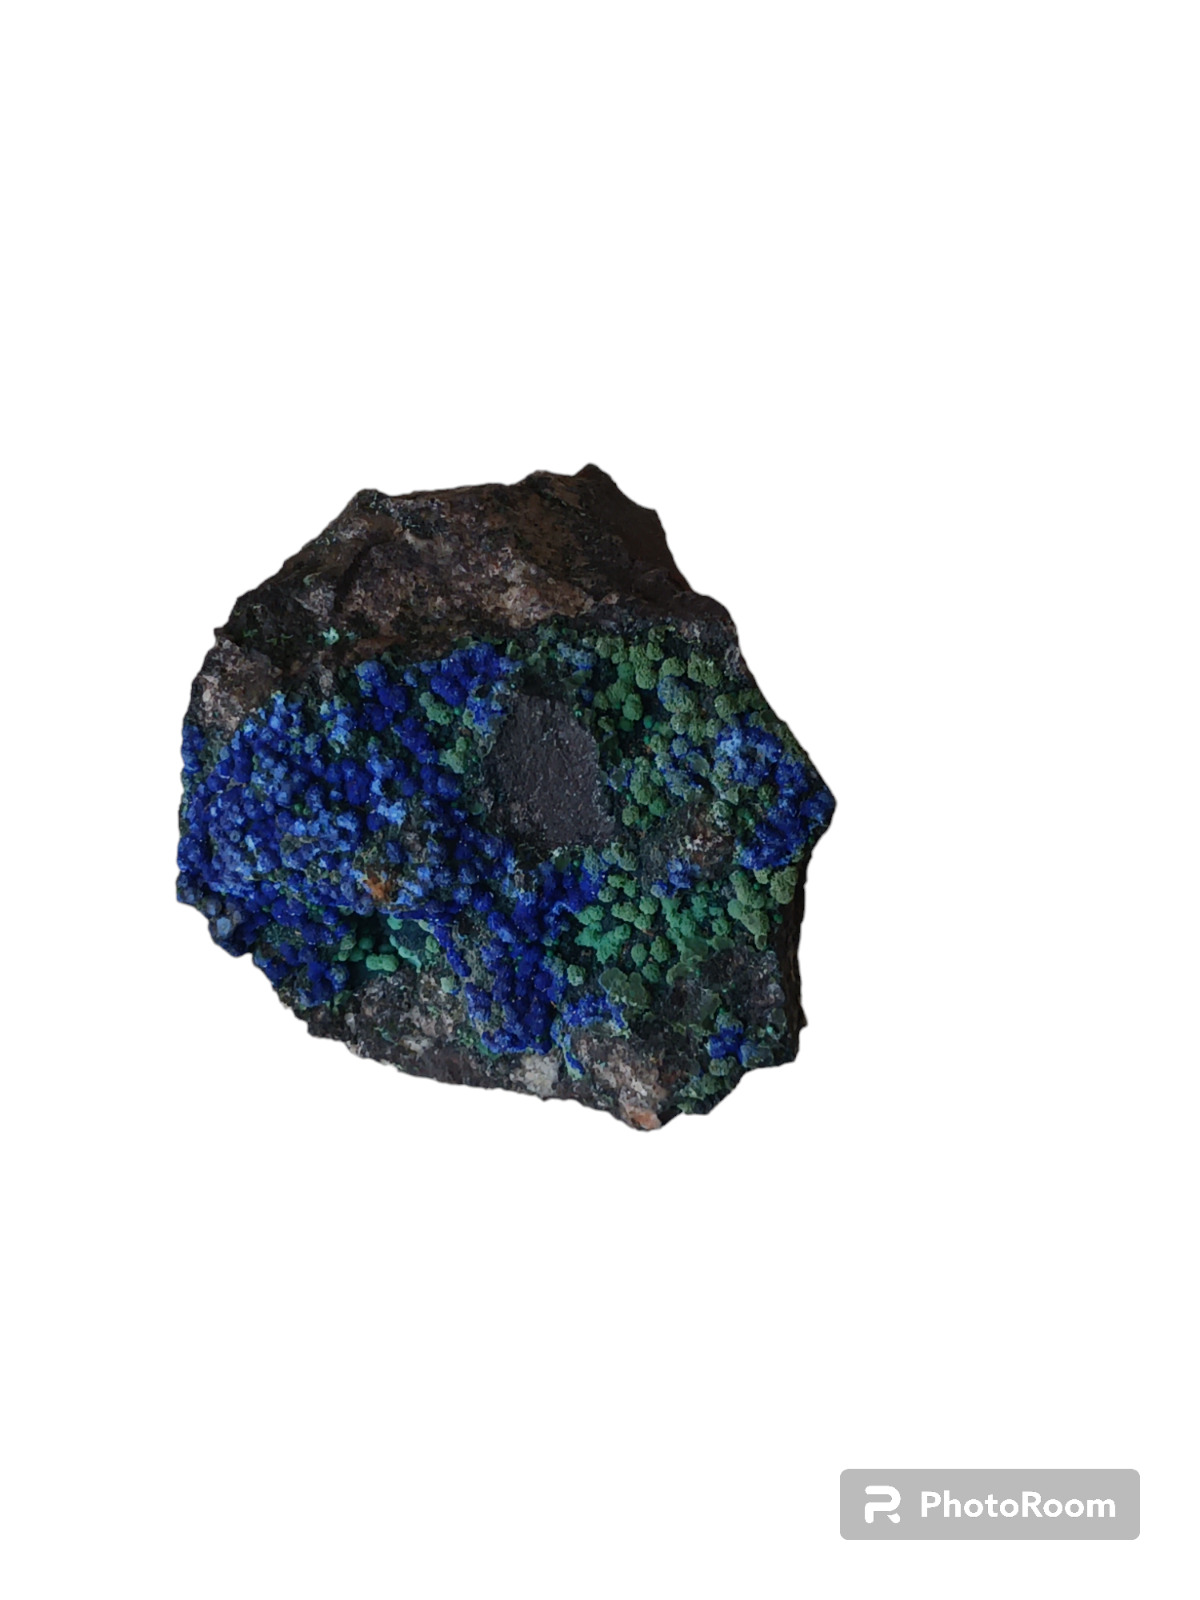 Azurite and malachite mineral specimen